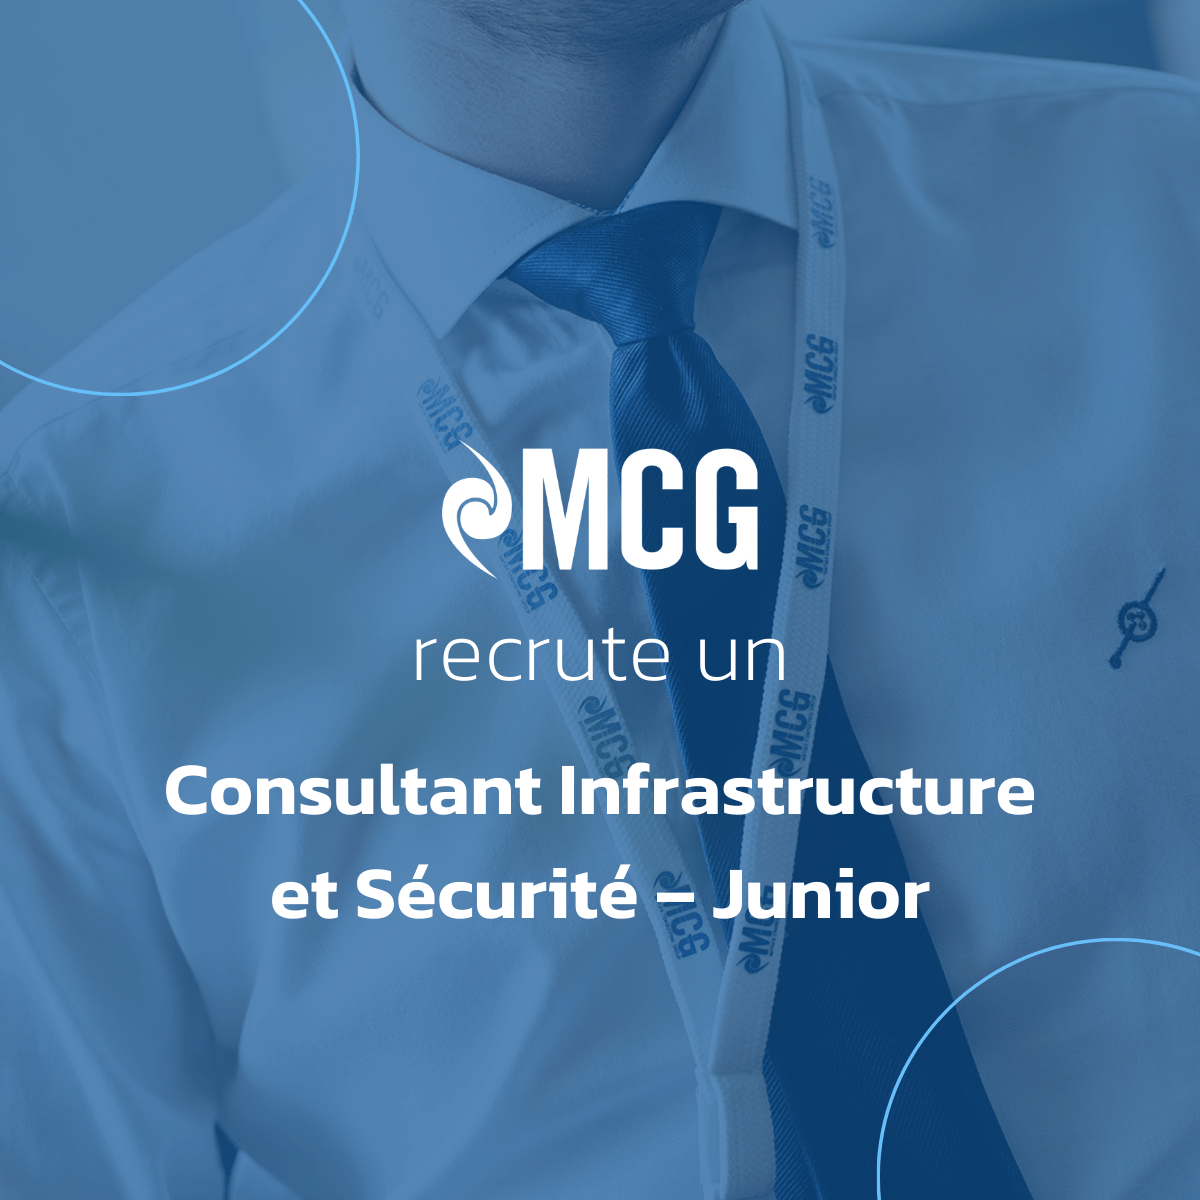 MCG recrute un Consultant Infrastructure et Sécurité – Junior